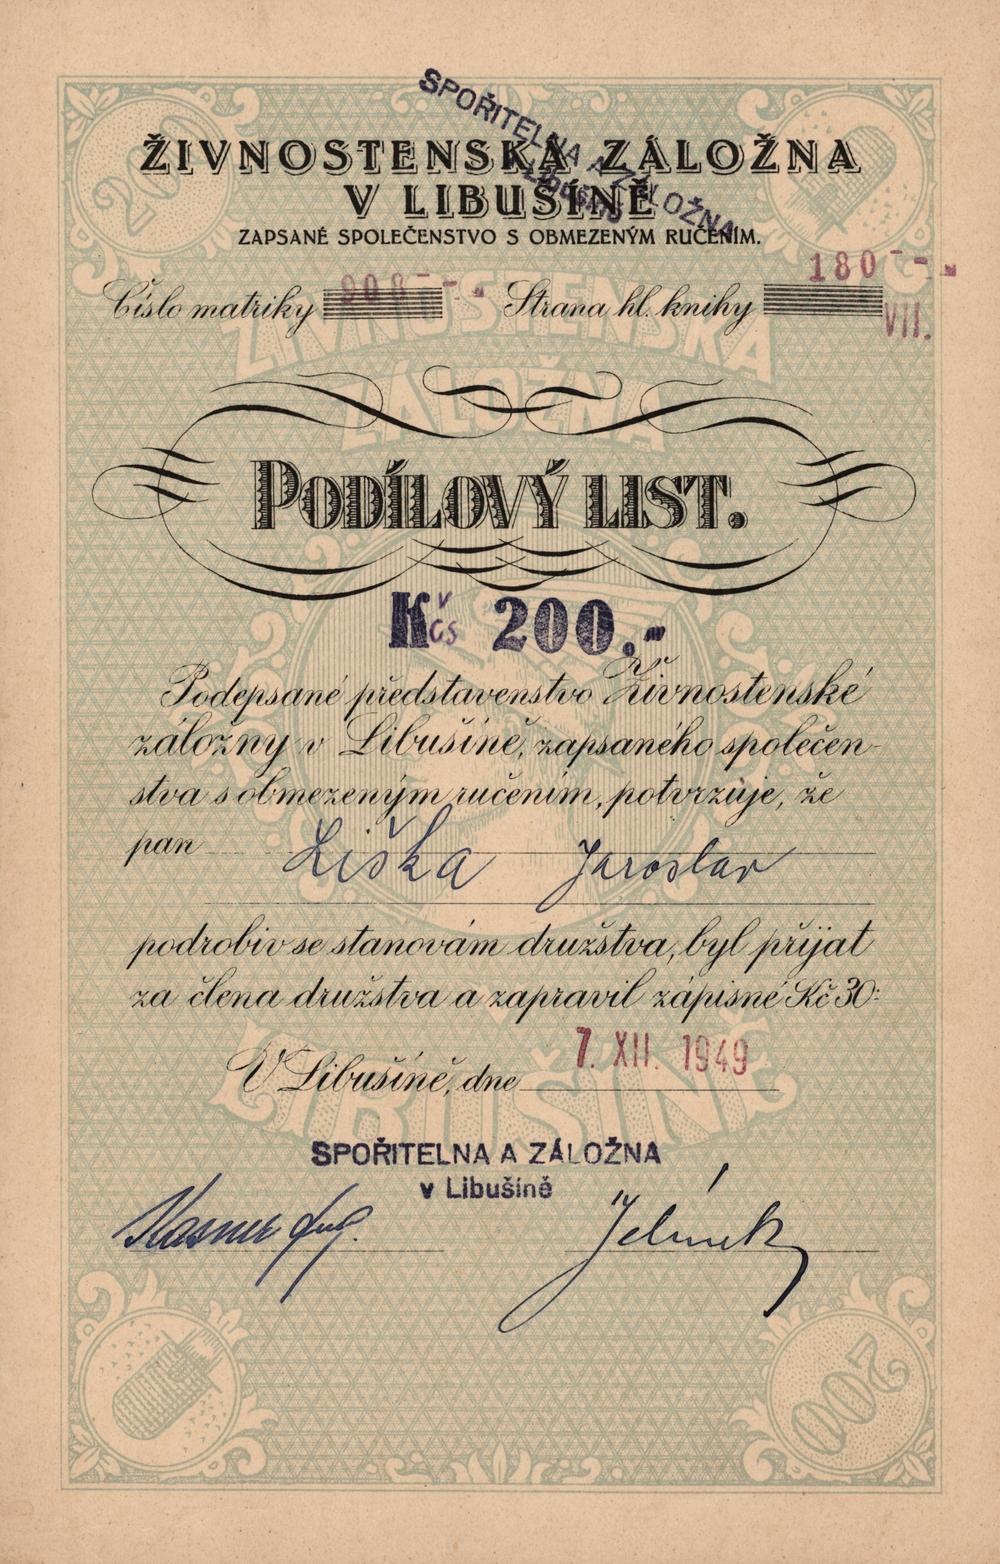 Podílový list Spořitelna a záložna v Libušíně, Libušín 1949, 200 Kčs